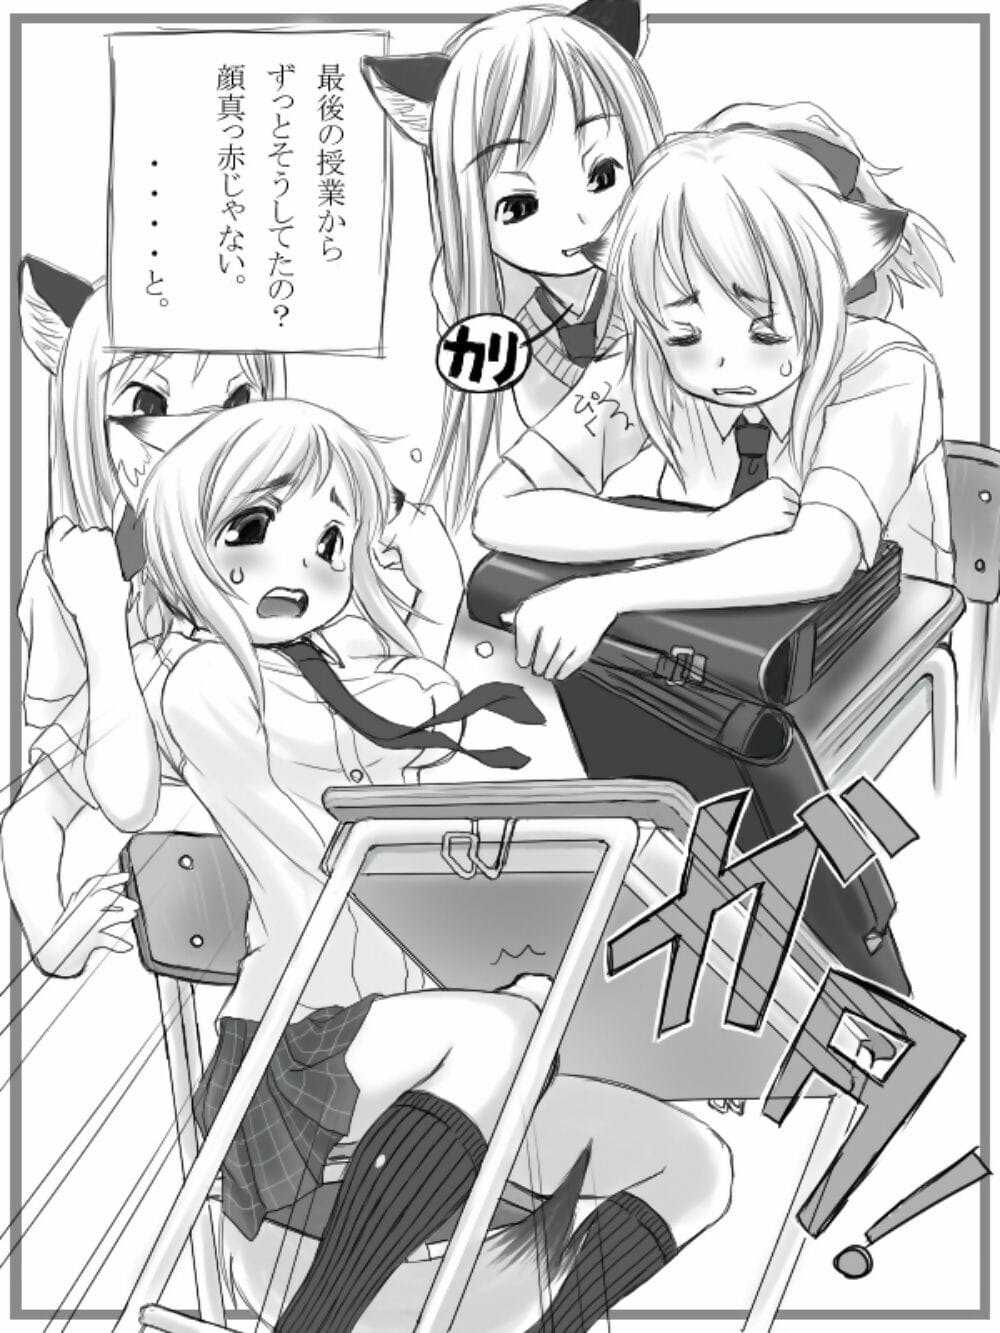 çok garou çok futanari san illüstrasyon shuu + omake Manga dijital PART 5